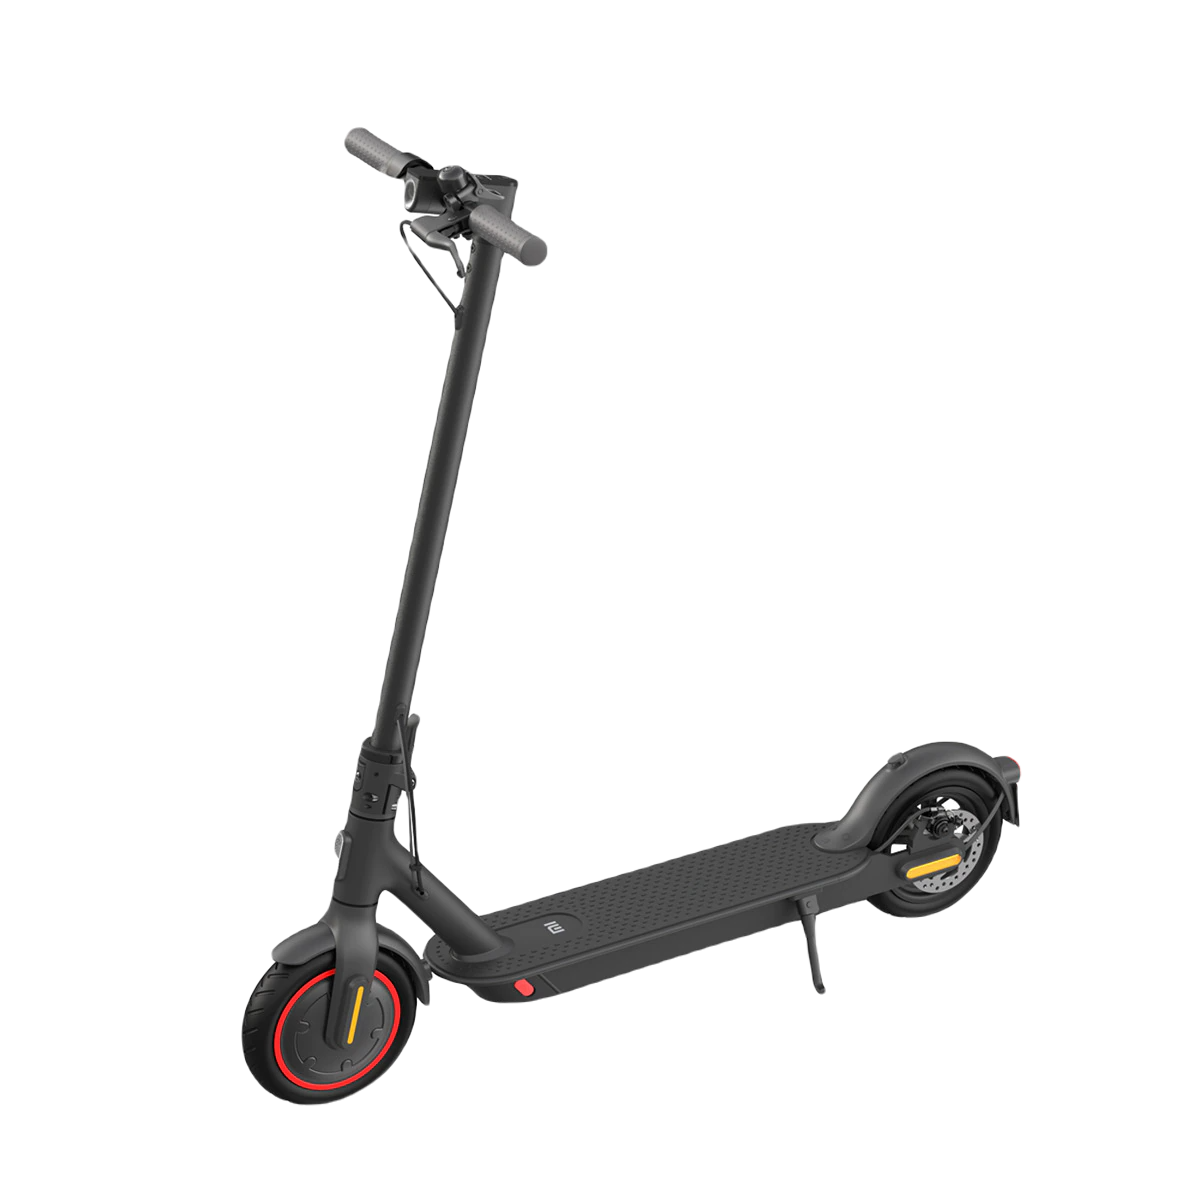 Mi Electric Scooter Pro 2. Ofertas para comprar más barato